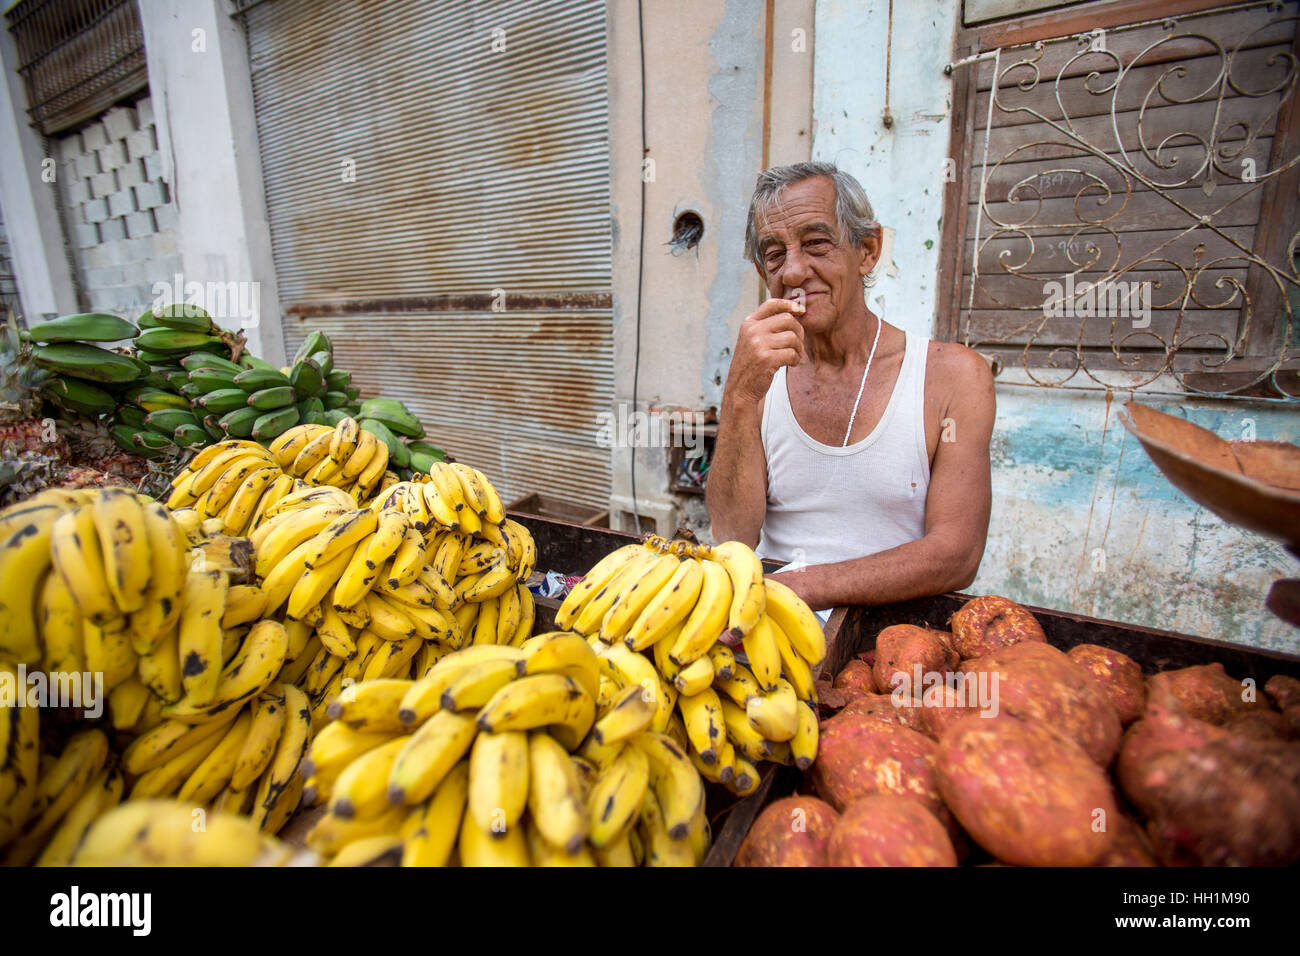 Fruit vendor in Old Havana Stock Photo